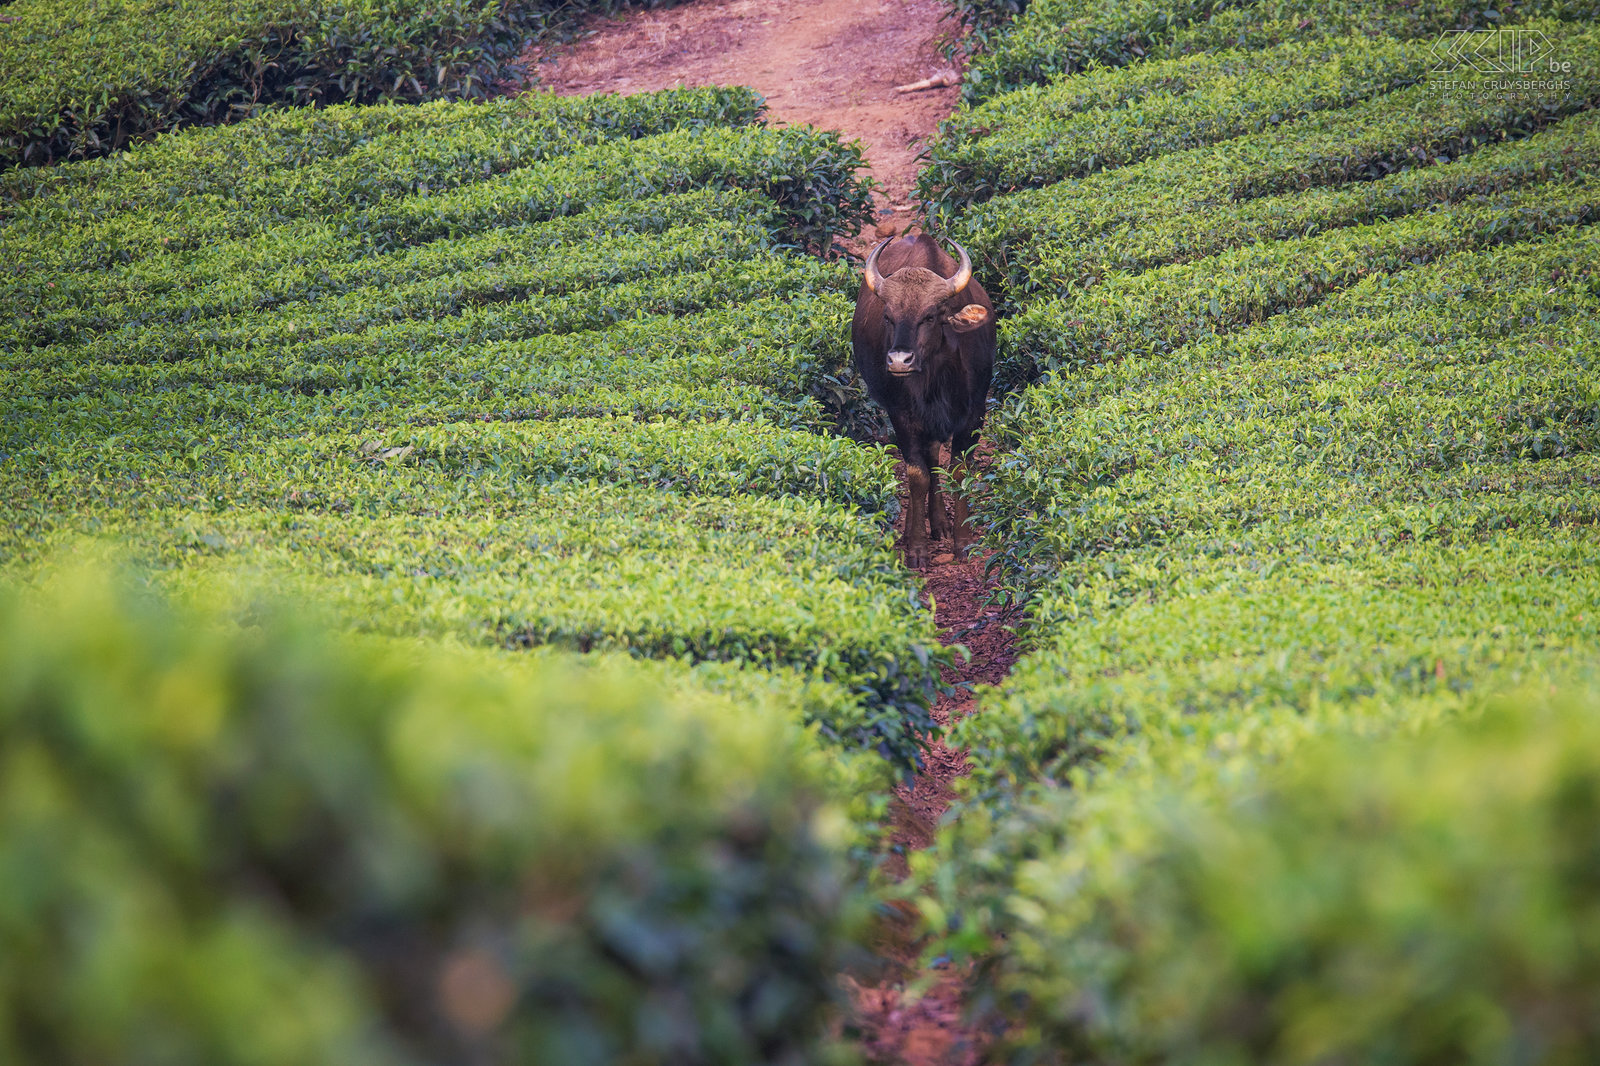 Valparai - Gaur Een gaur tussen de theevelden van Valparai. De gaur (Bos gaurus), soms ook wel de Indische bison genoemd, is het grootste (wilde) rund van Azië. <br />
 Stefan Cruysberghs